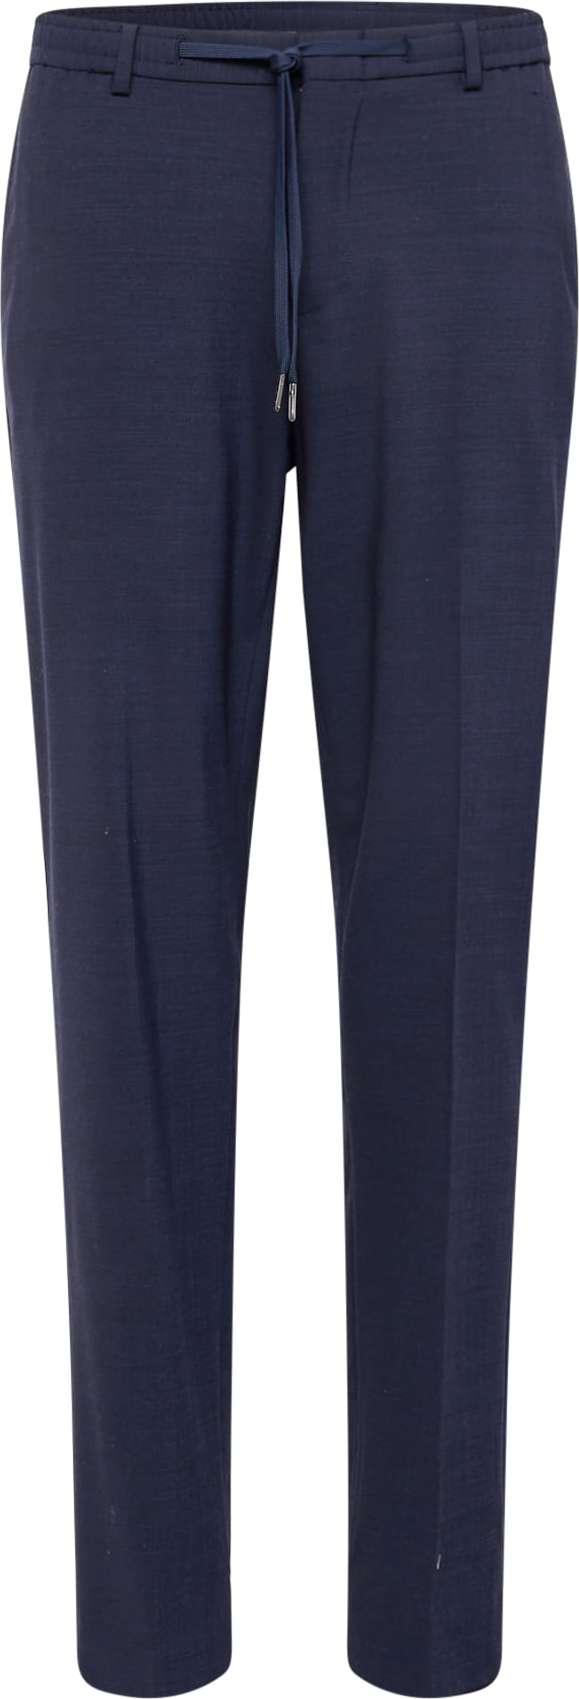 Kalhoty s puky Michael Kors námořnická modř